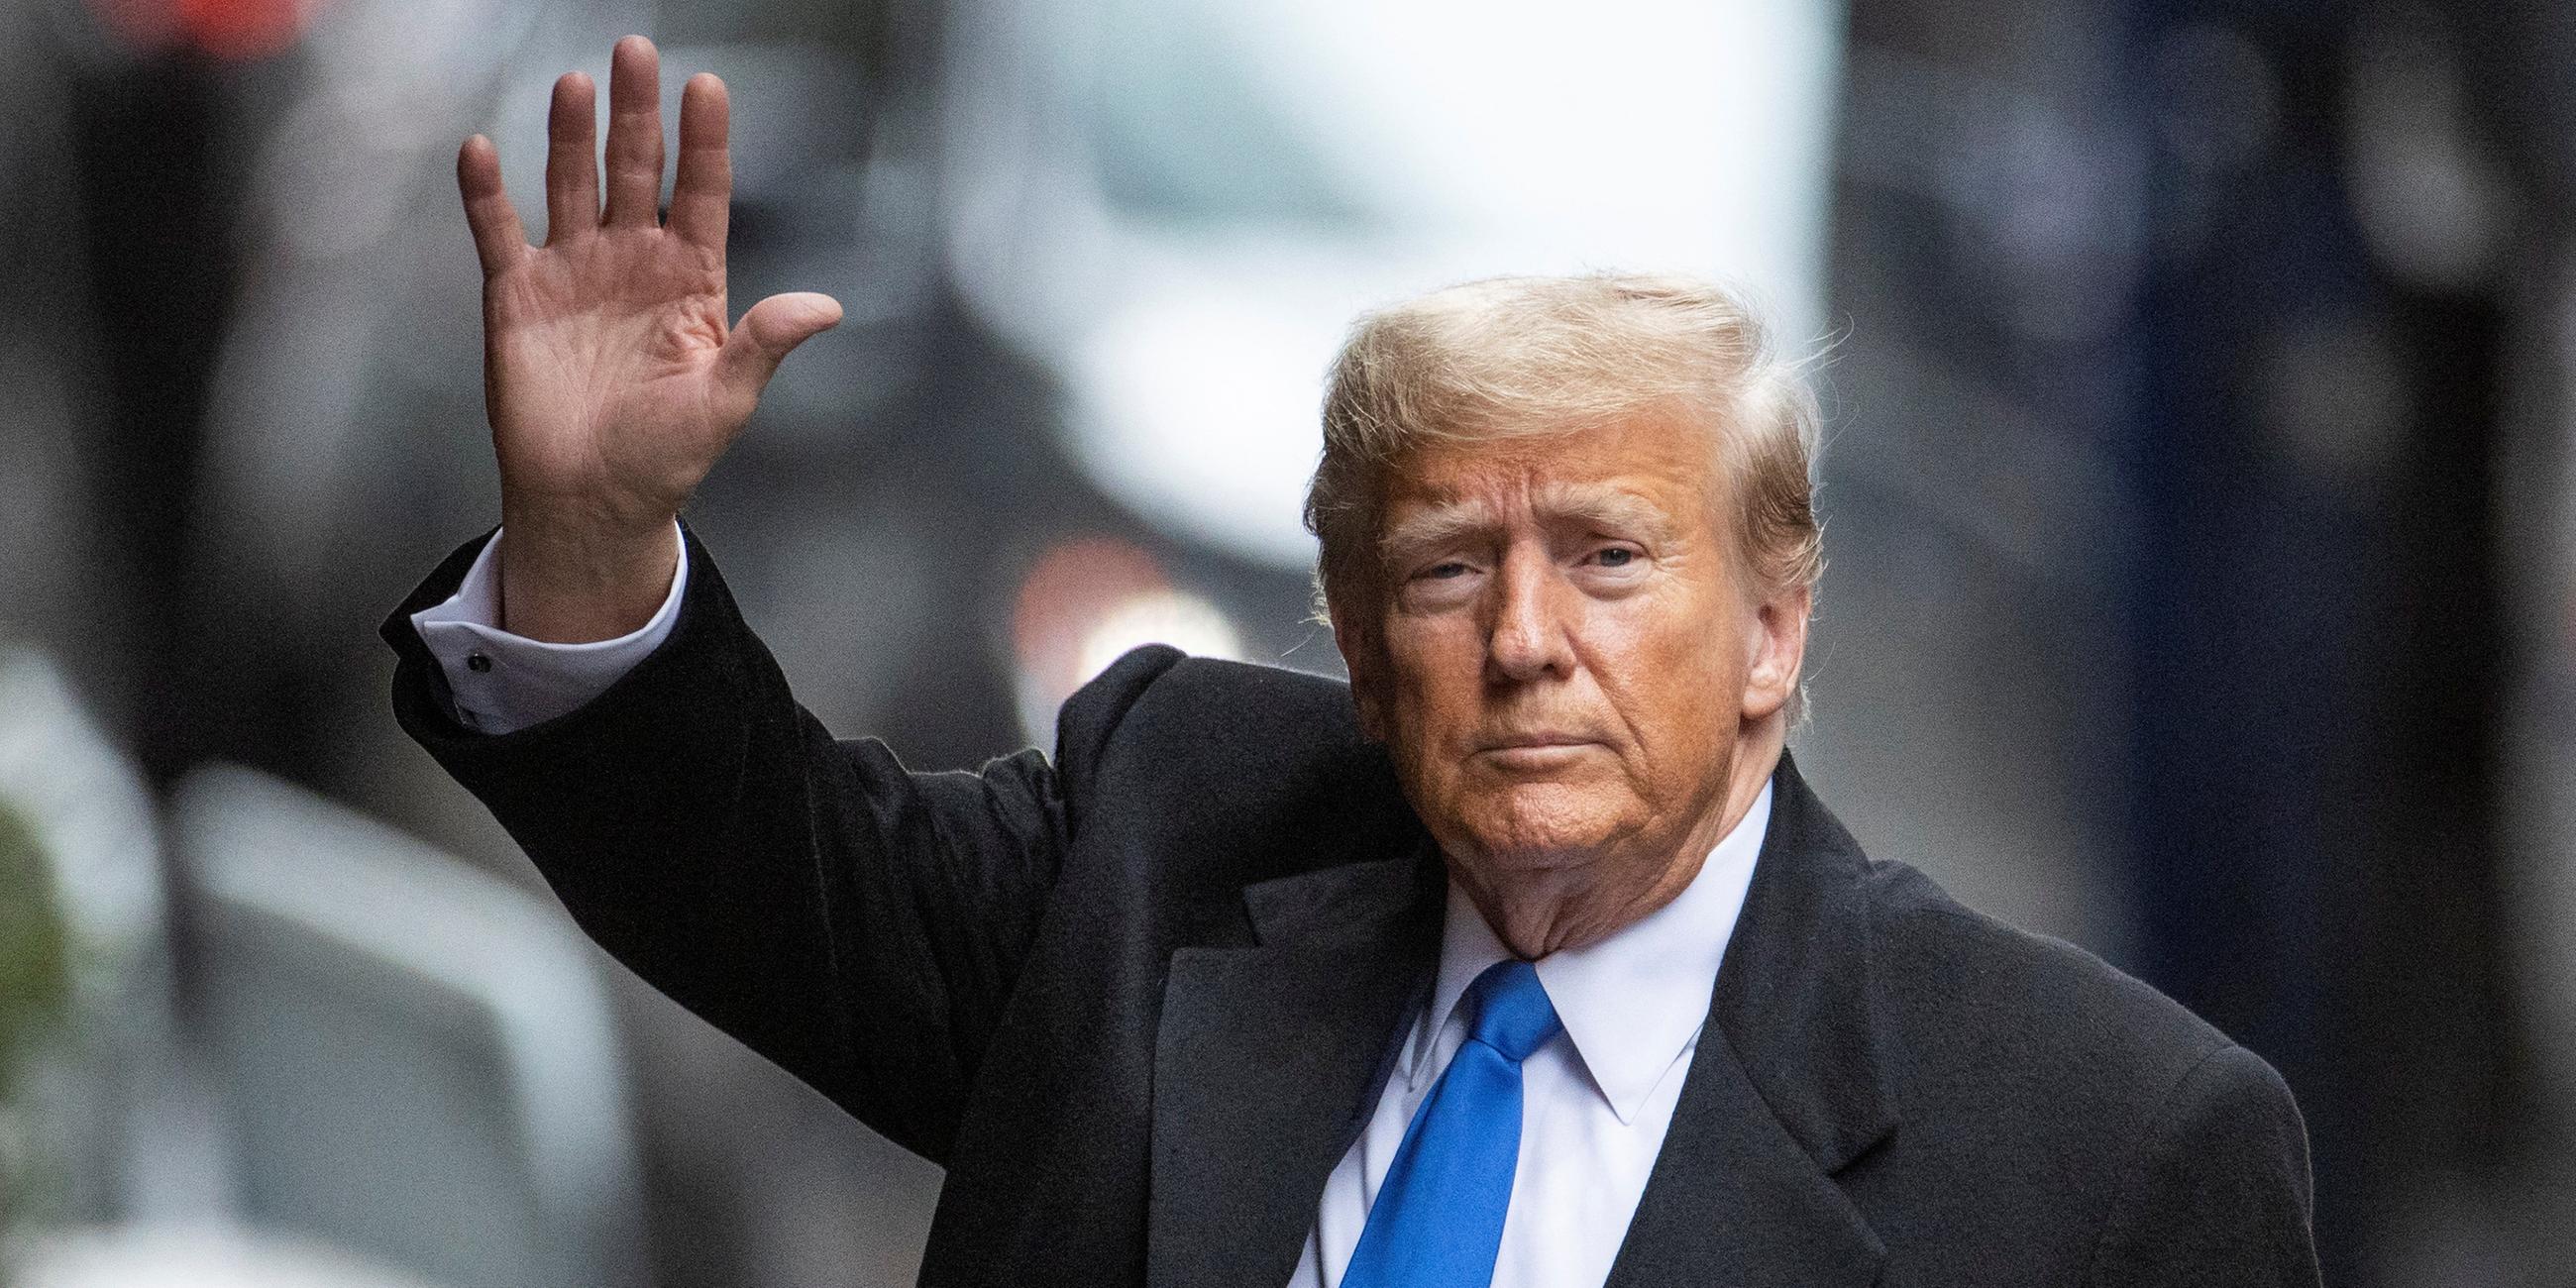 Der ehemalige US-Präsident Donald Trump hebt die Hand zum Gruß seiner Unterstützer.